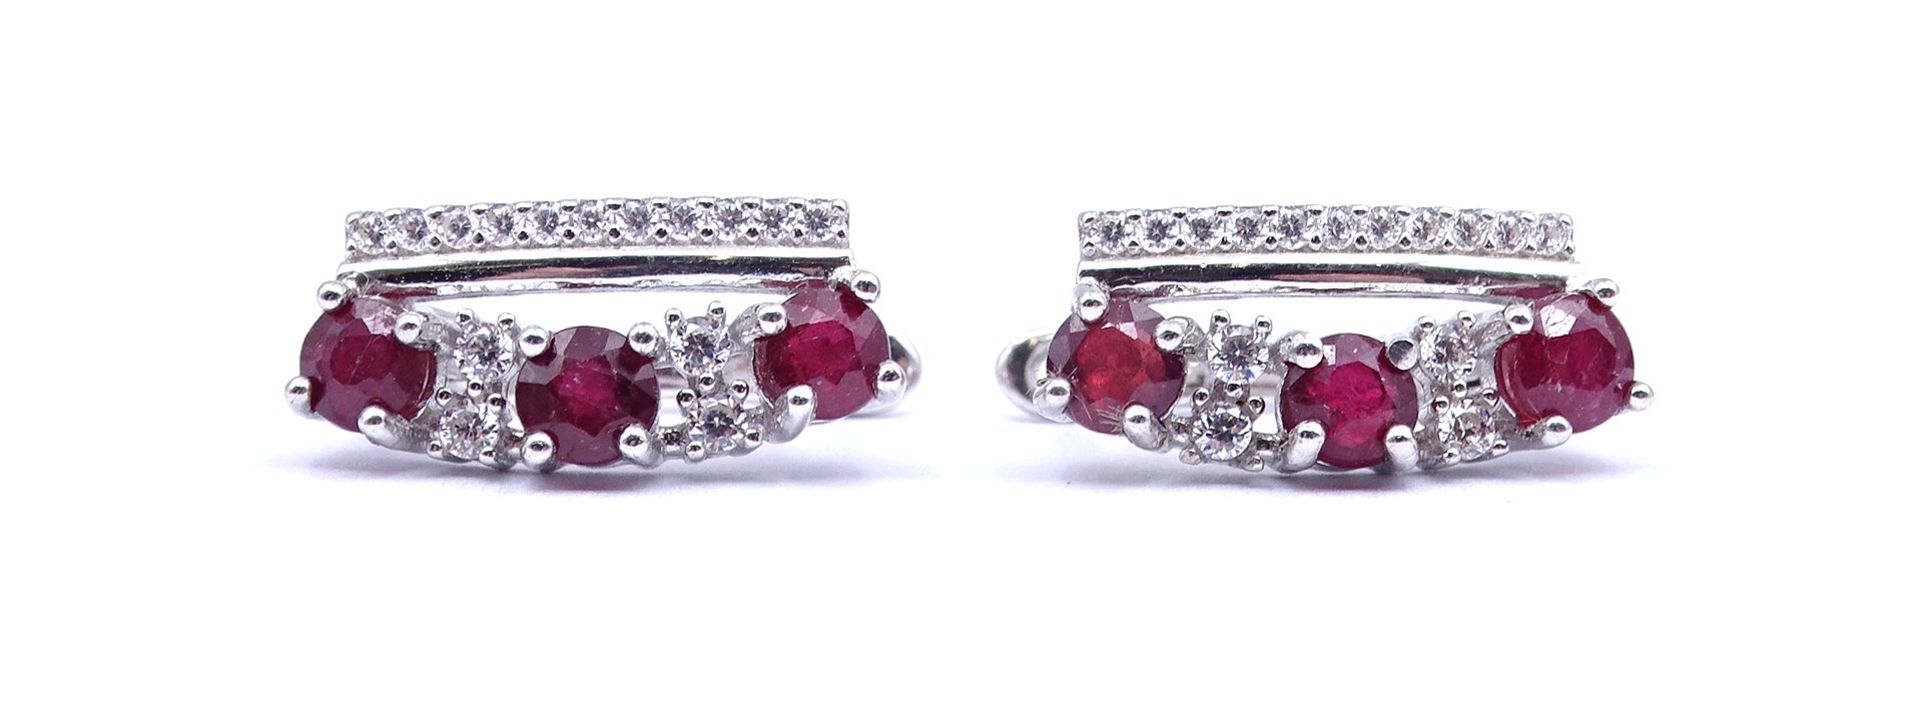 Paar Silber Ohrringe mit rund facc. Rubinen, Sterlingsilber 0.925, L. 1,8cm, zus. 4,4g.